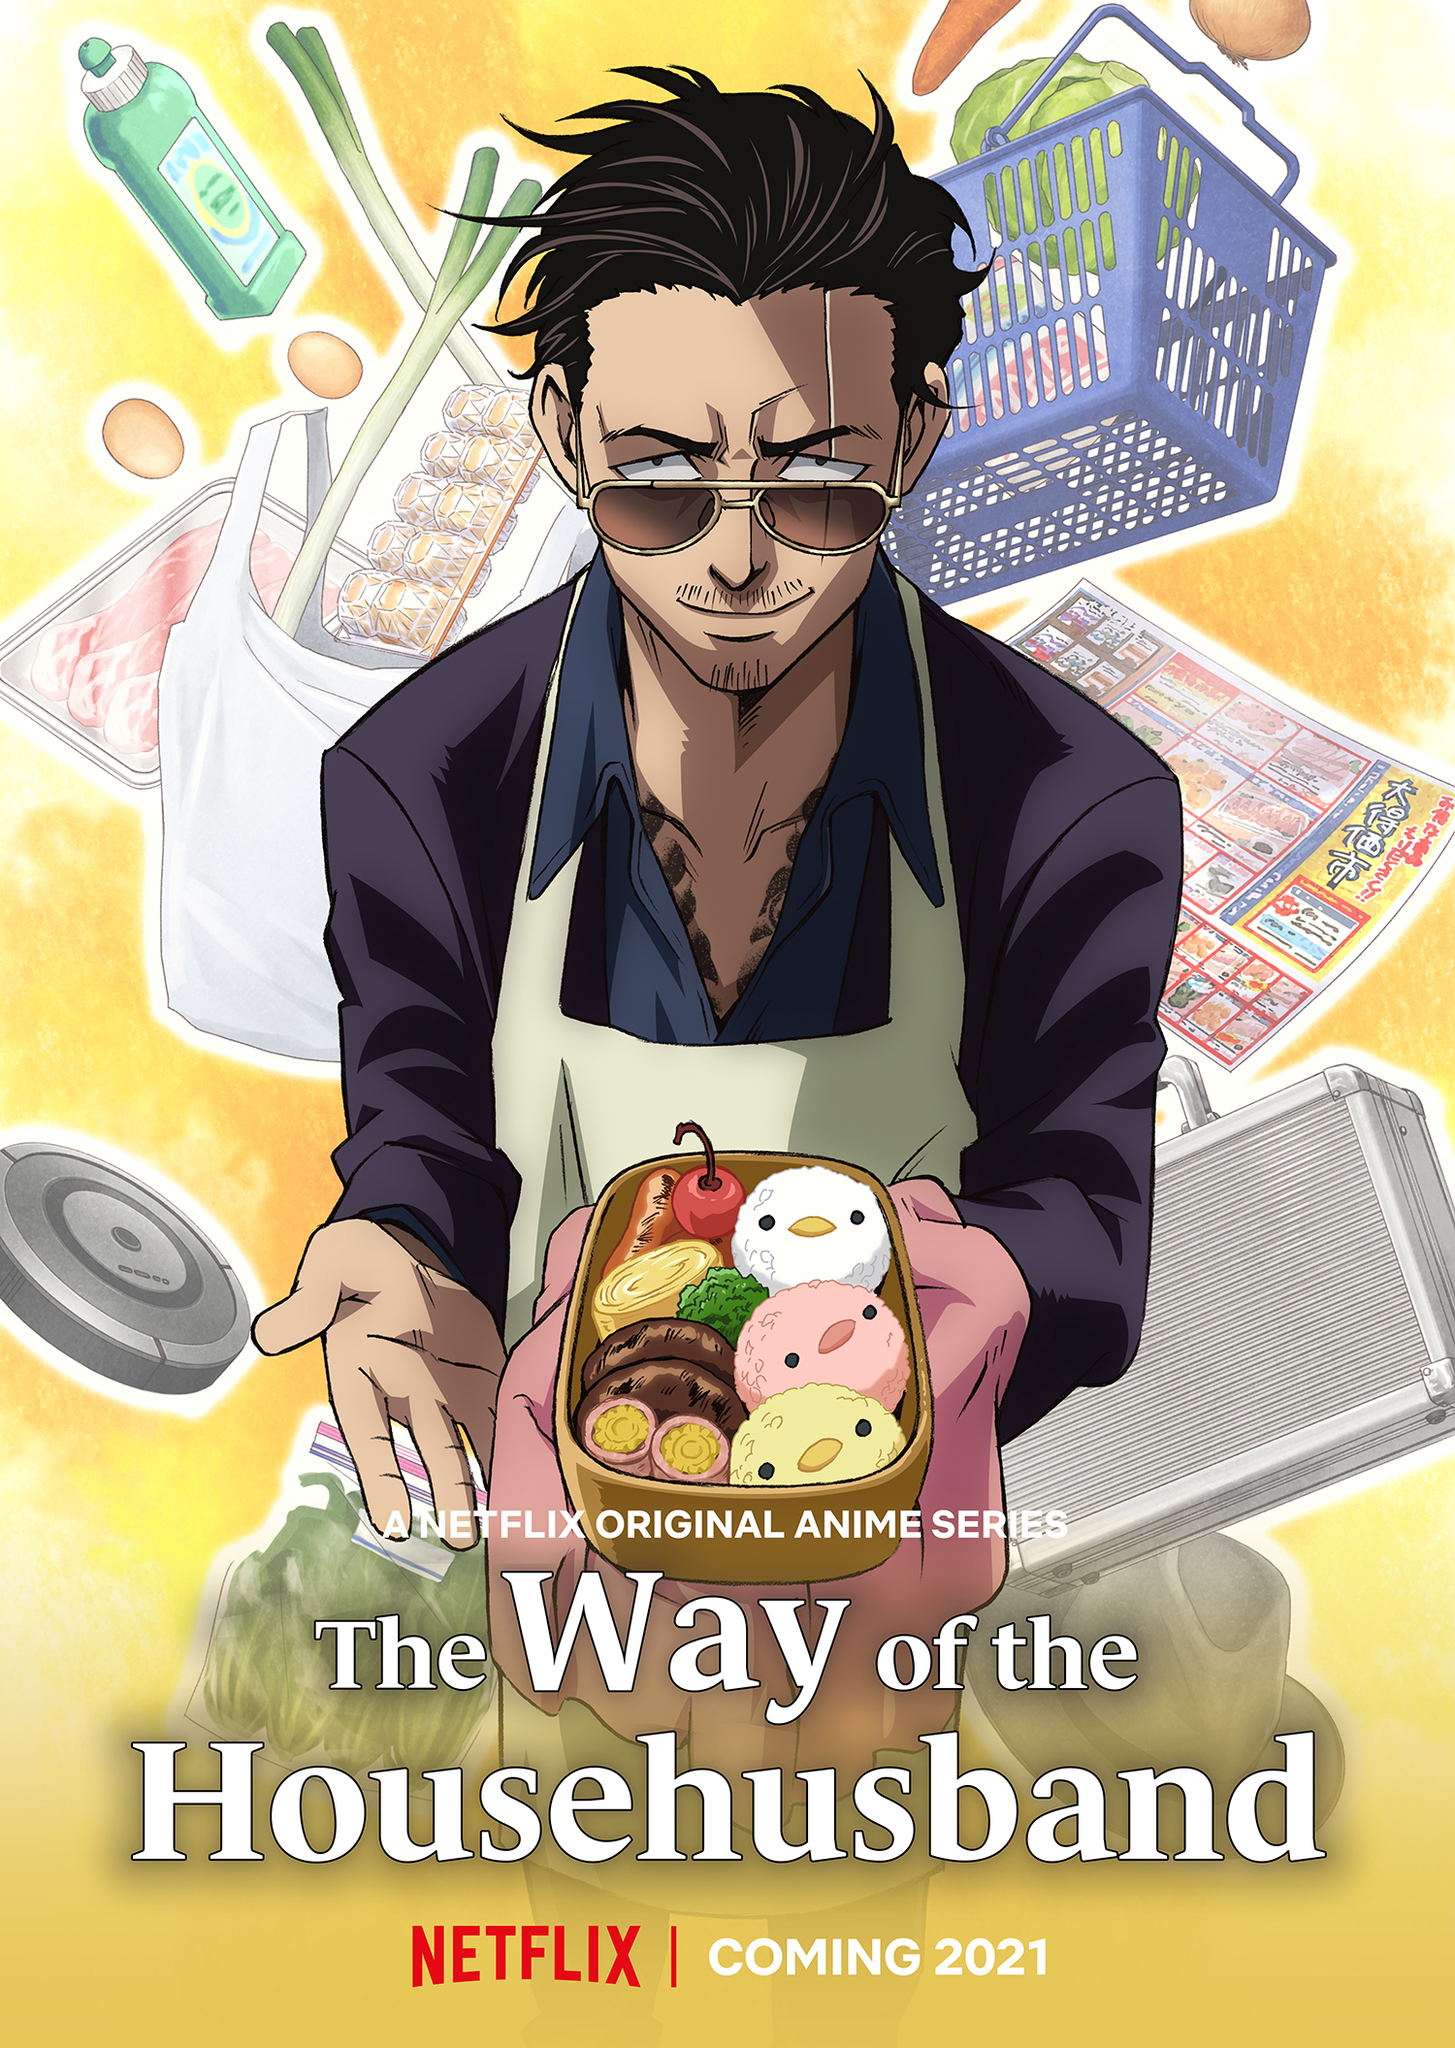 The Way of the Househusband  Anime Manga anime Poster